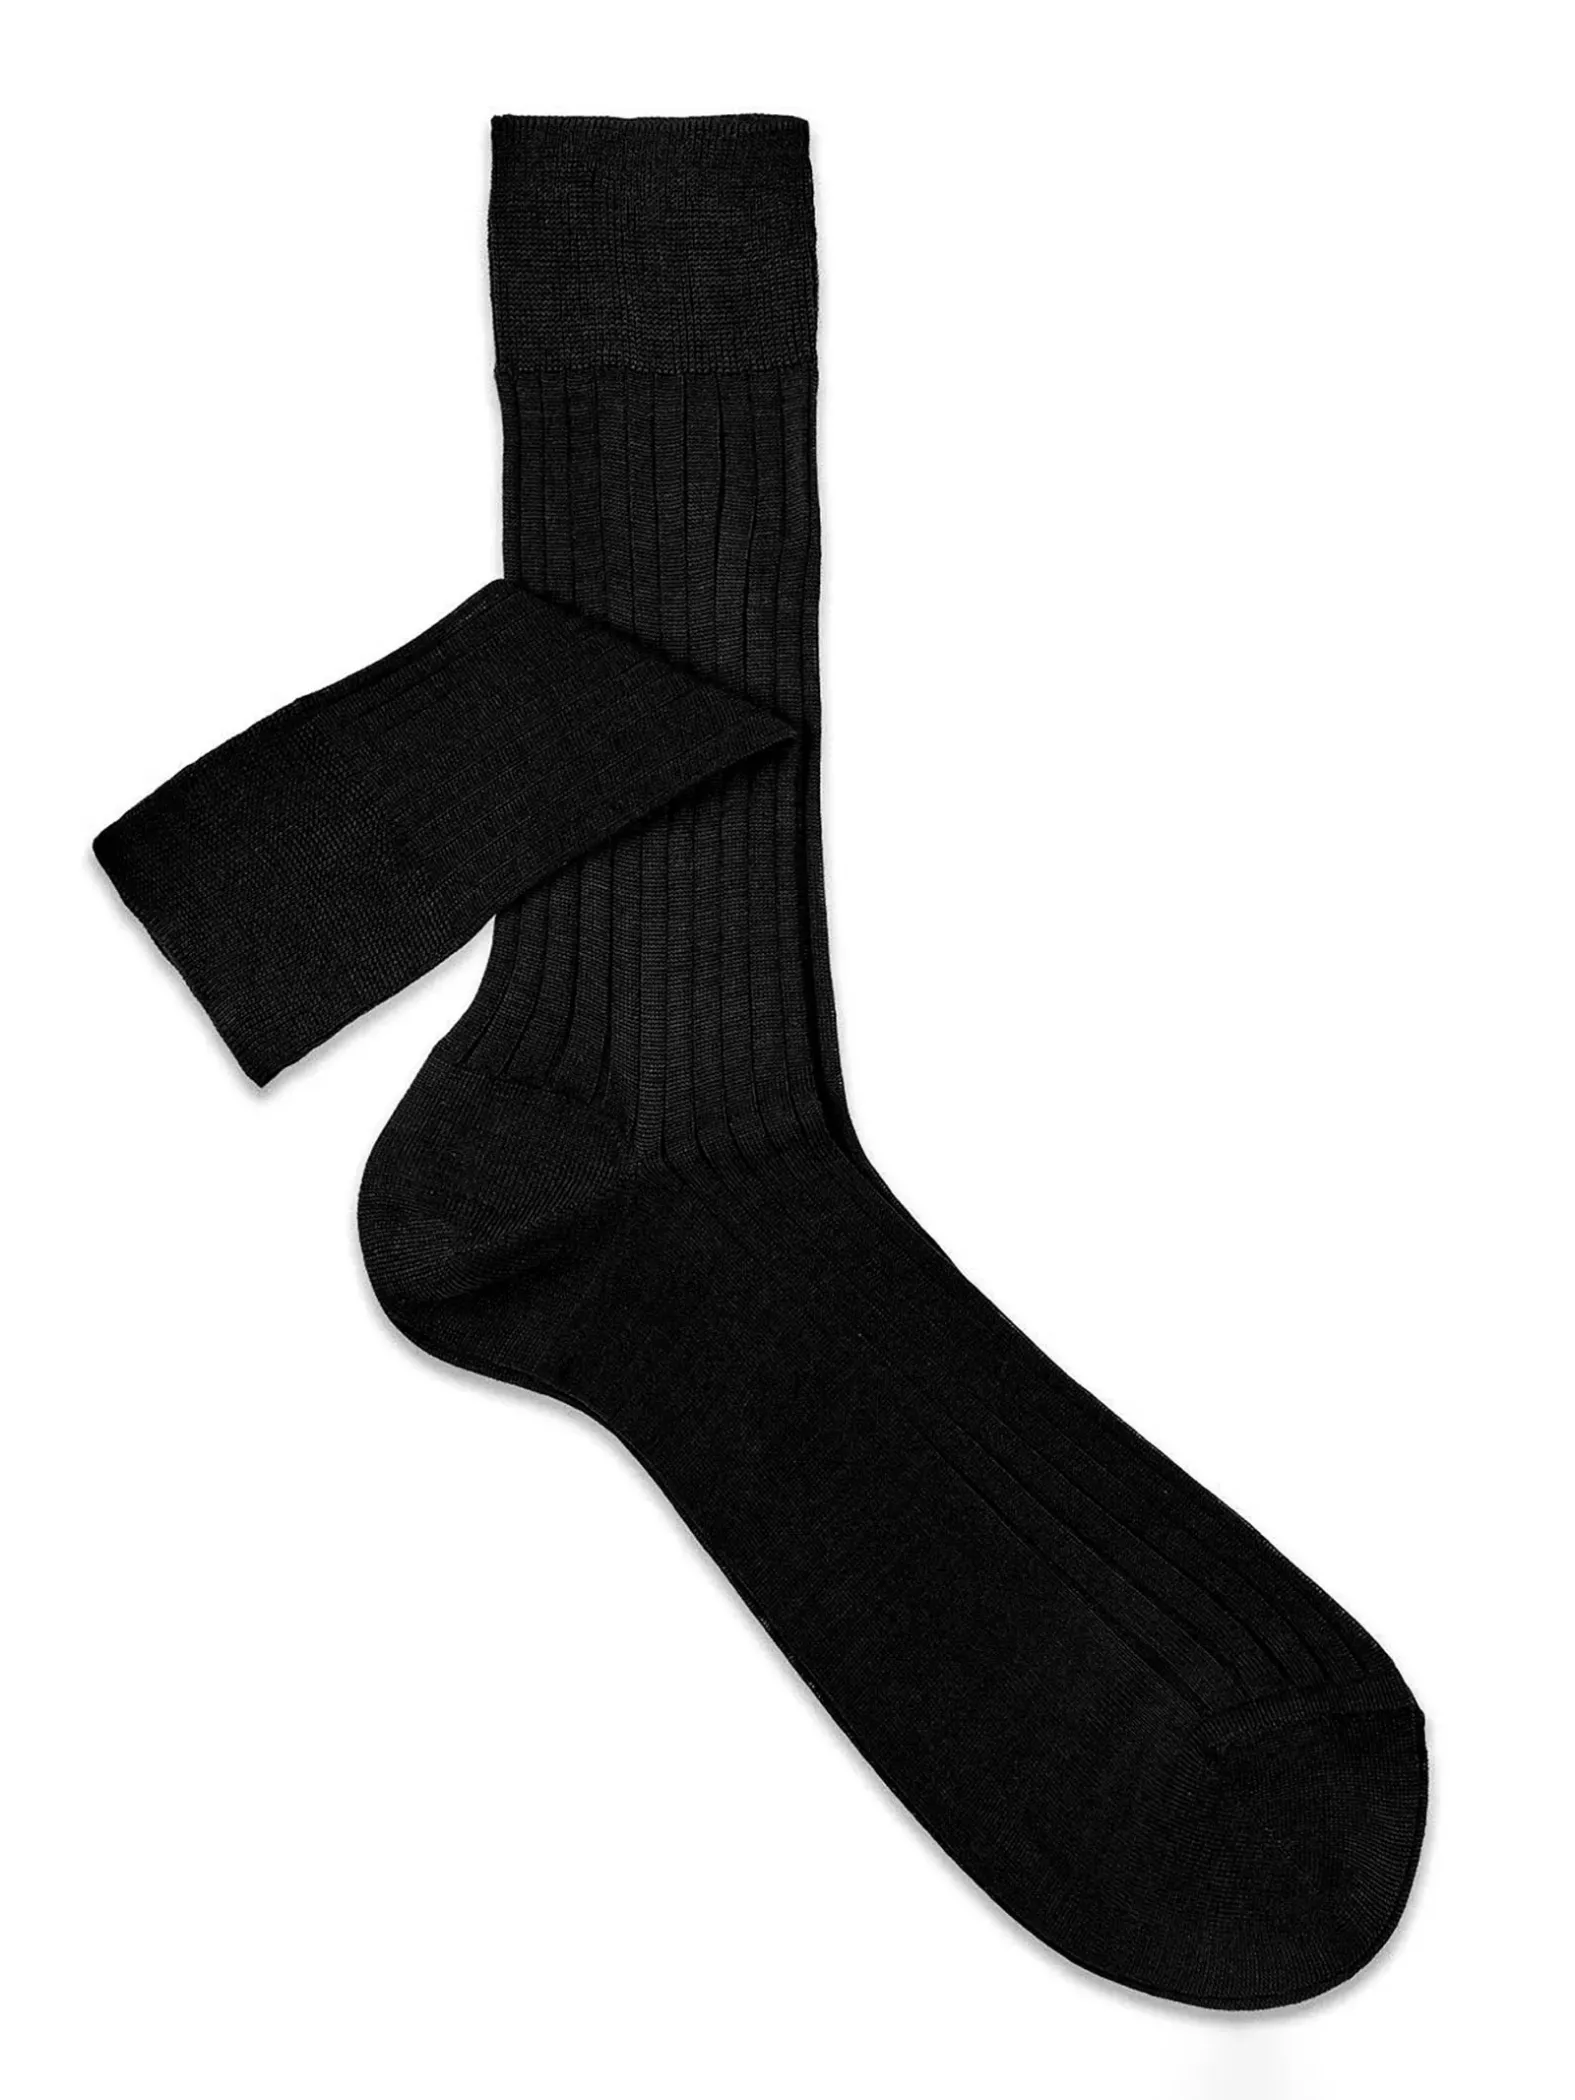 Classic rib middle thin mid calf socks - 100% Filo scozia cotton